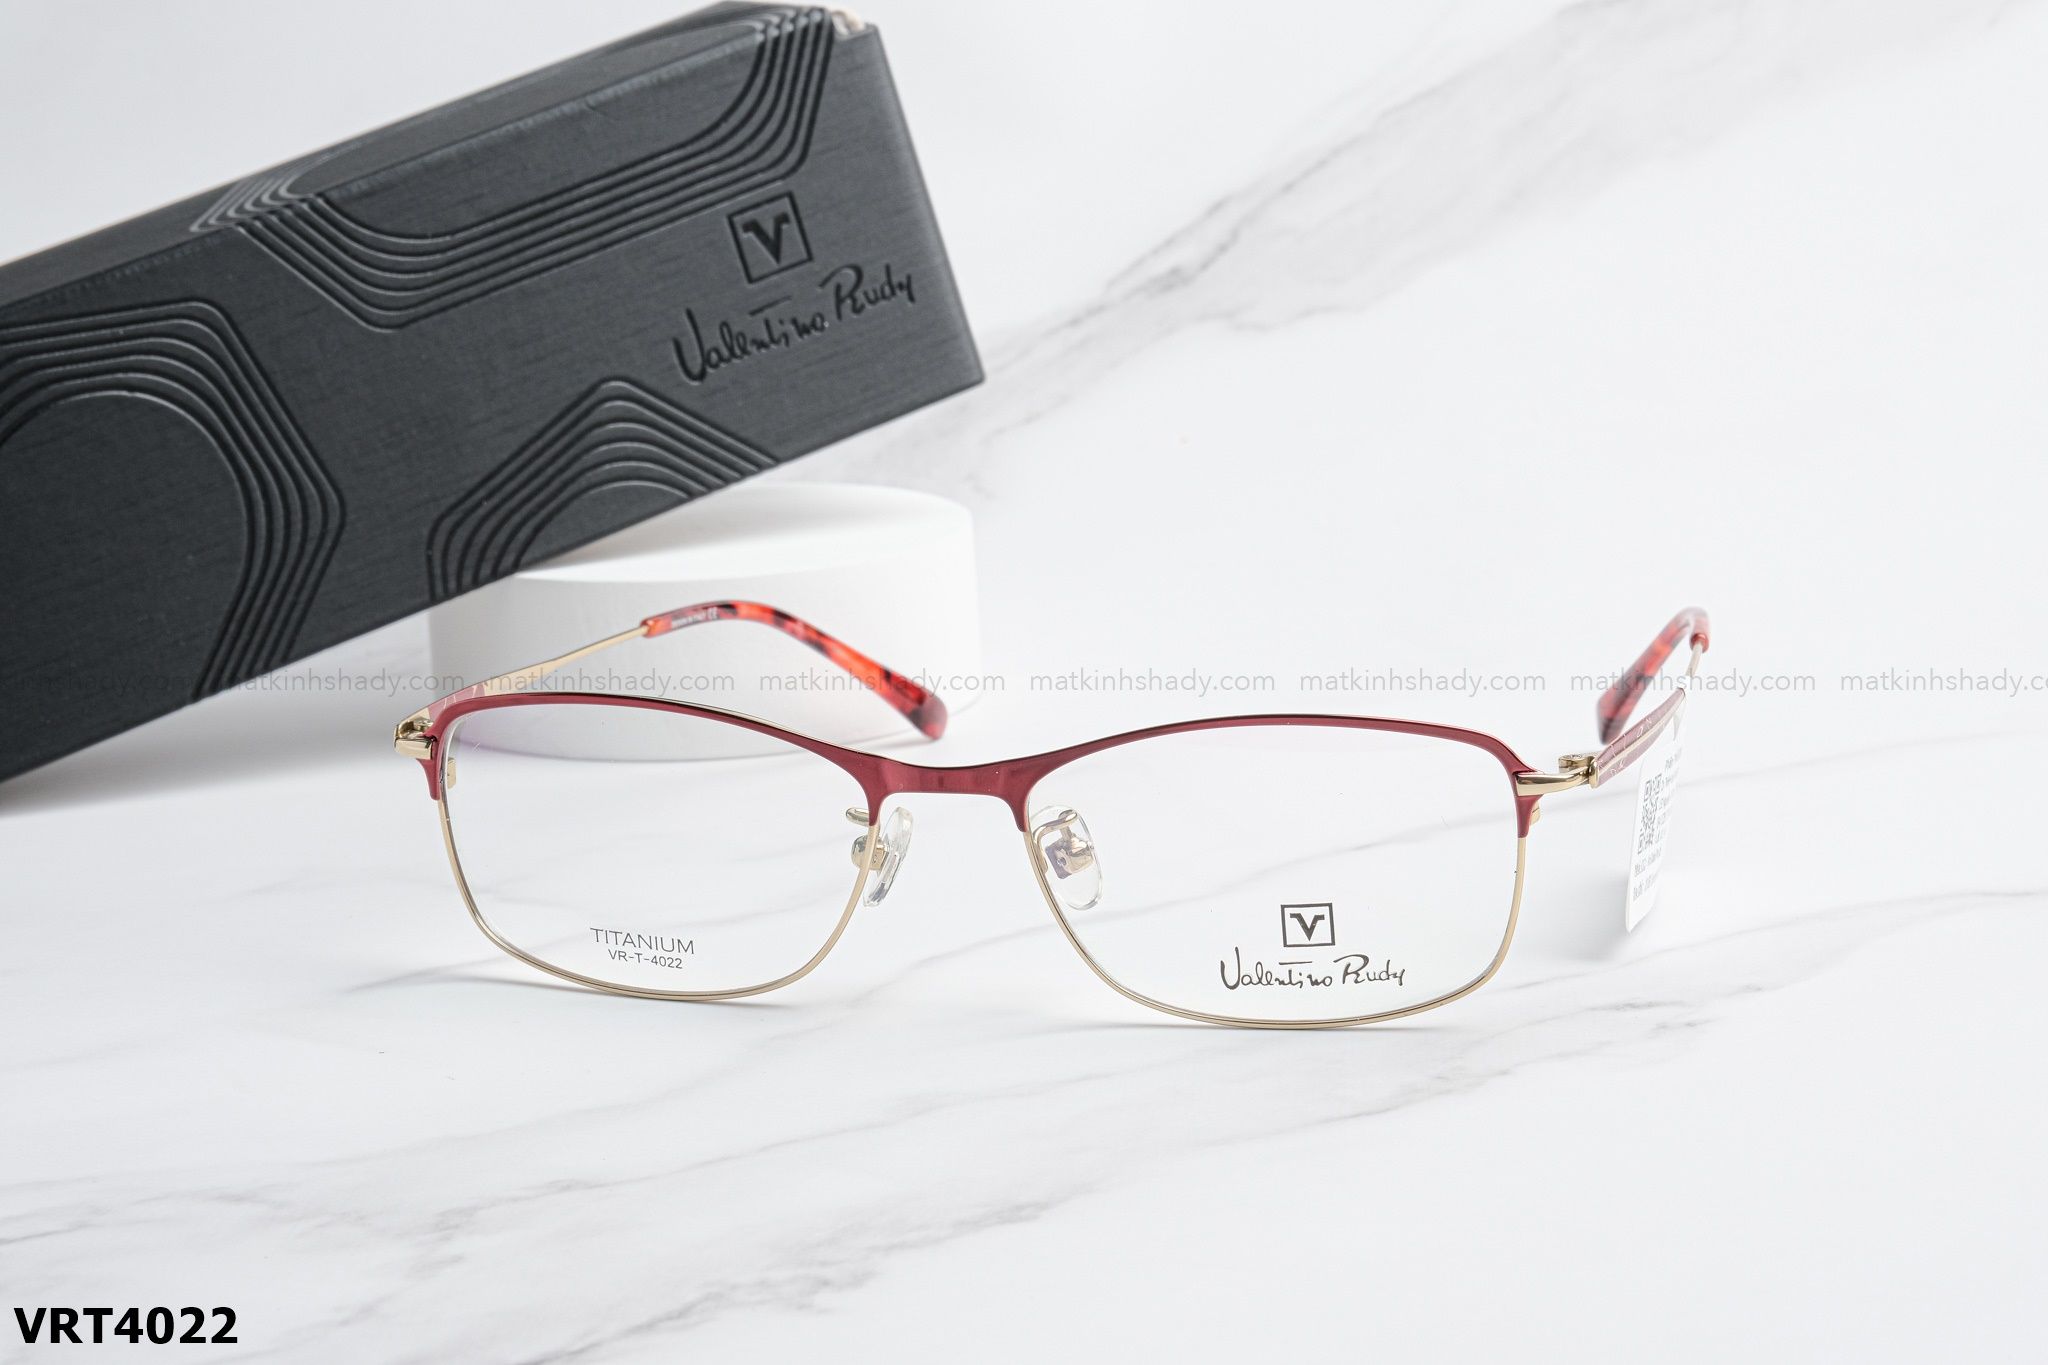  Valentino Eyewear - Glasses - VRT4022 